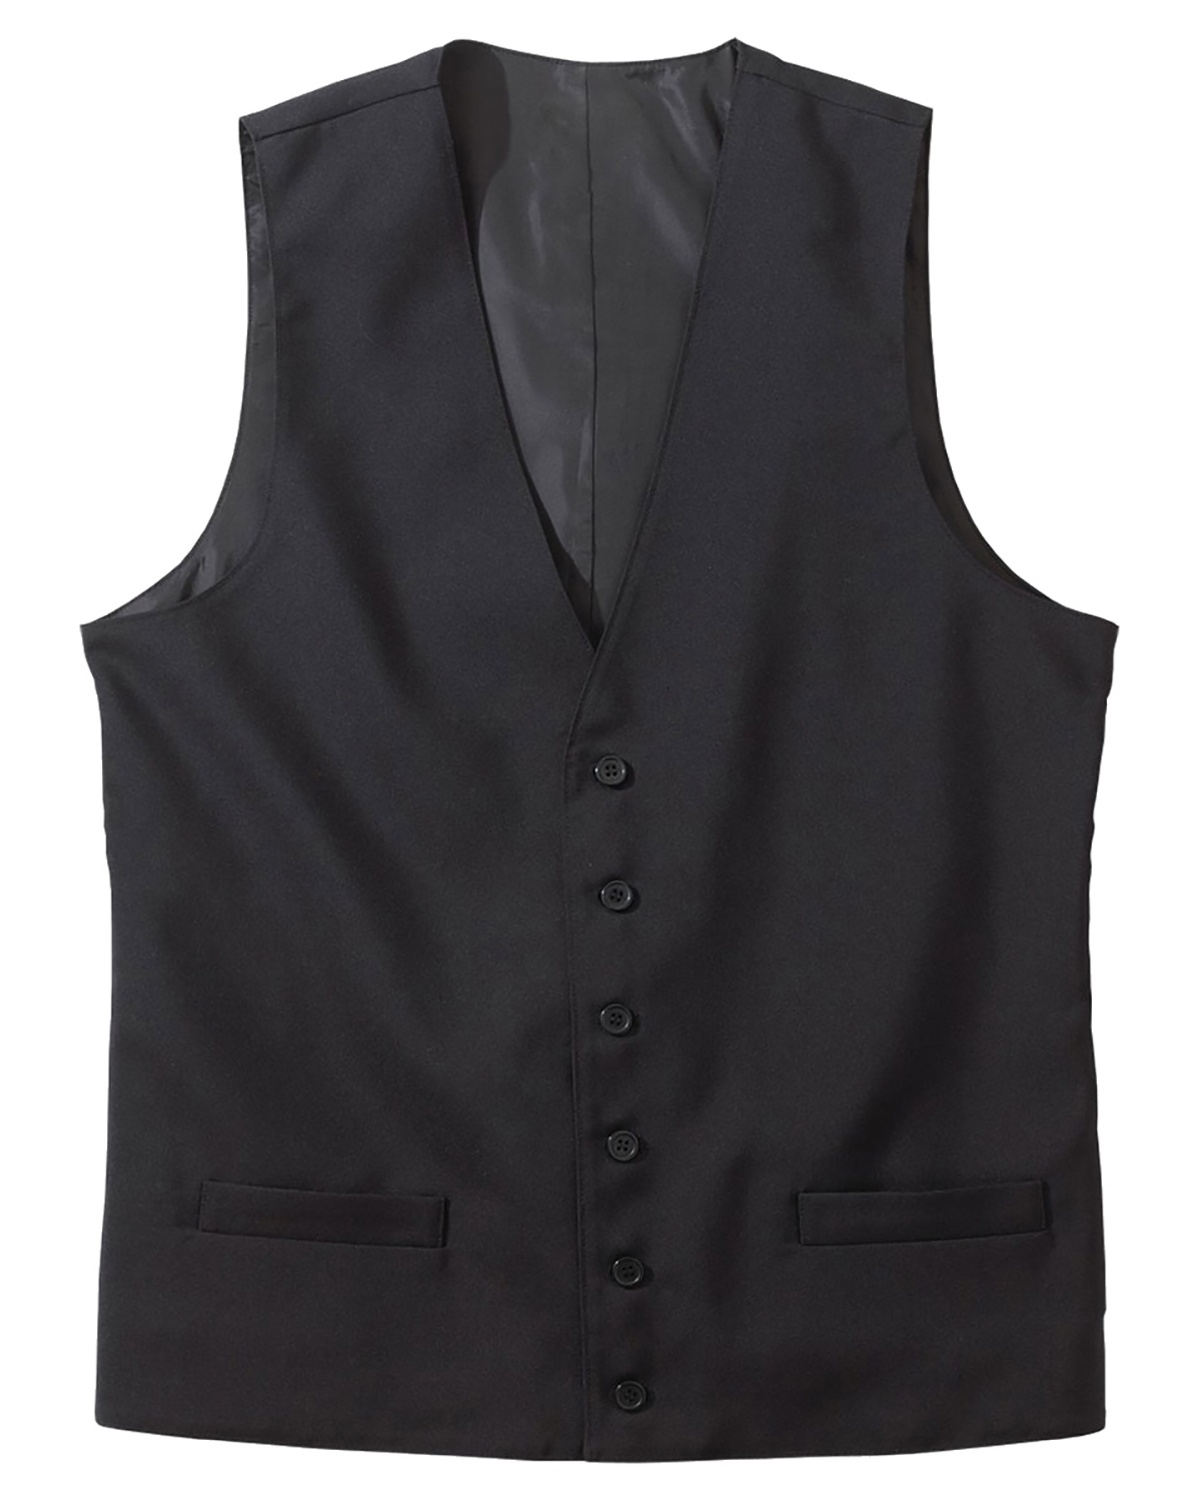 'Edwards 4550 Men's Firenza Vest'